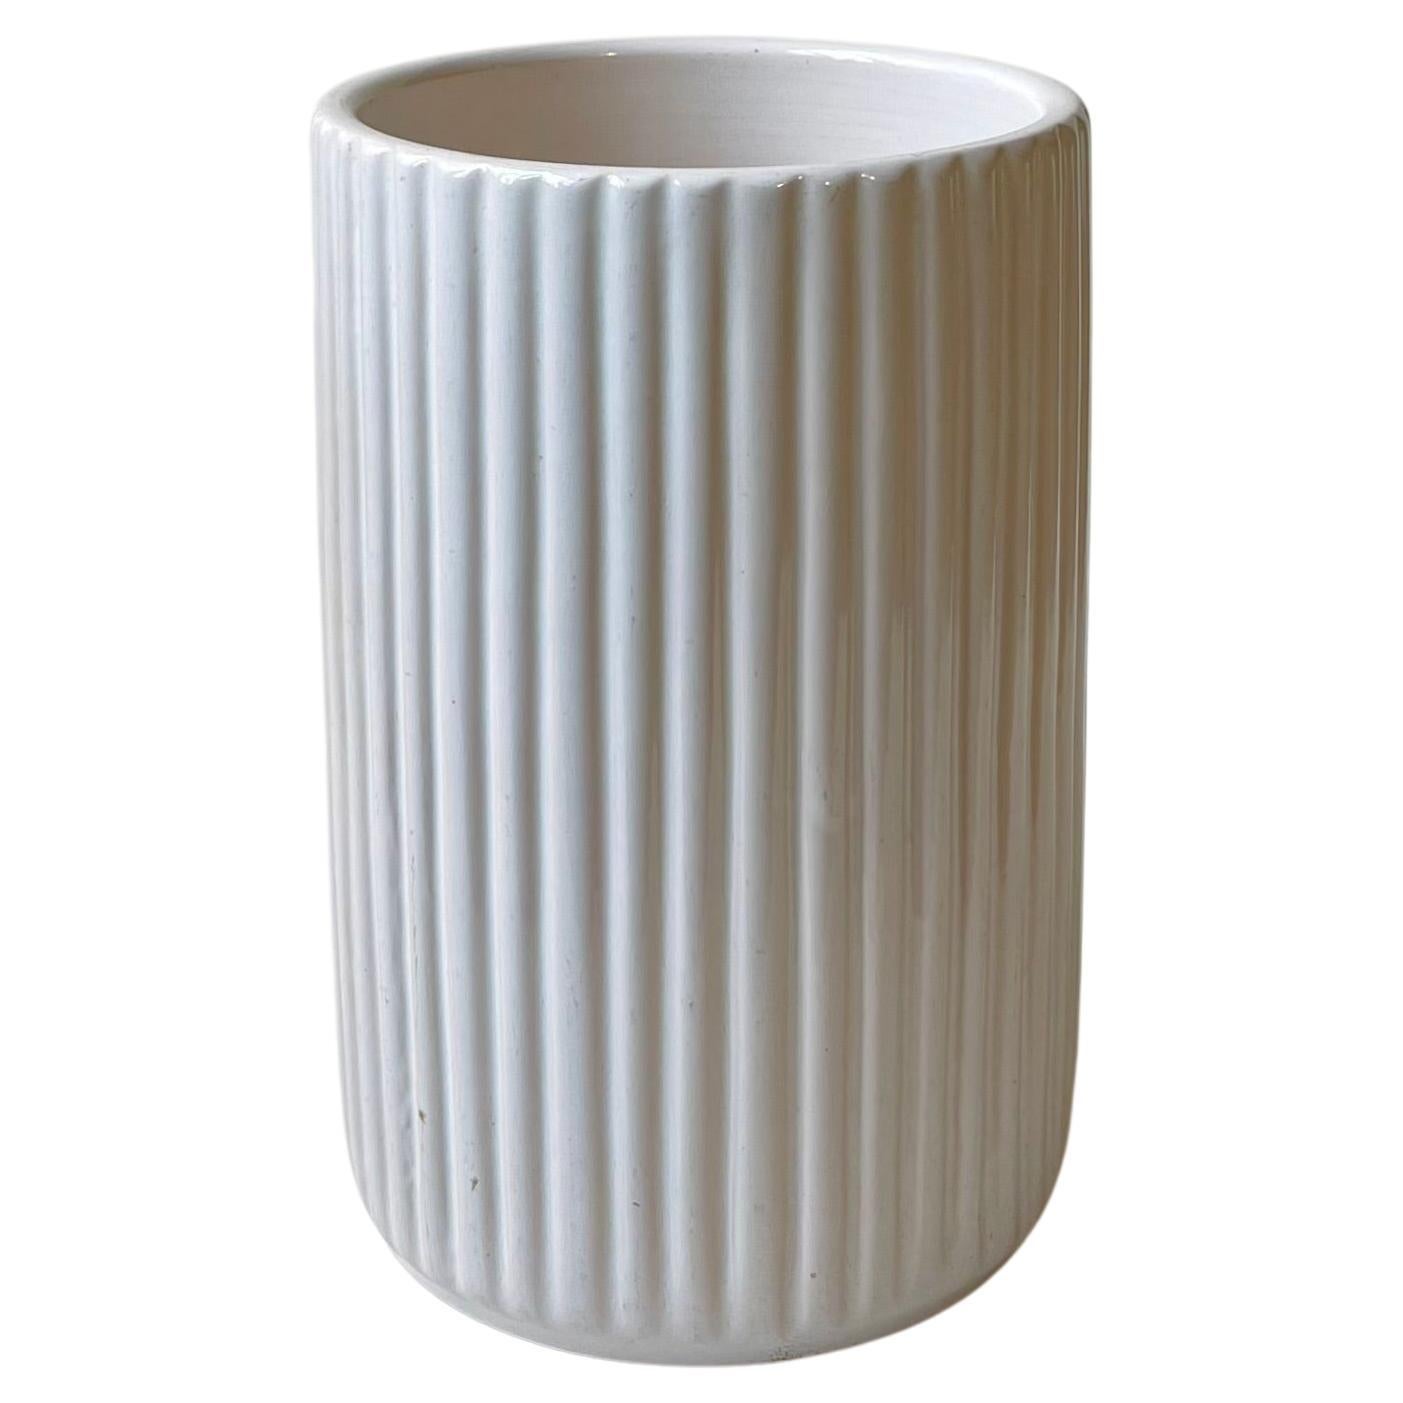 Architektonische geriffelte Vase aus Keramik in weißer Glasur von L. Hjorth, 1940er Jahre